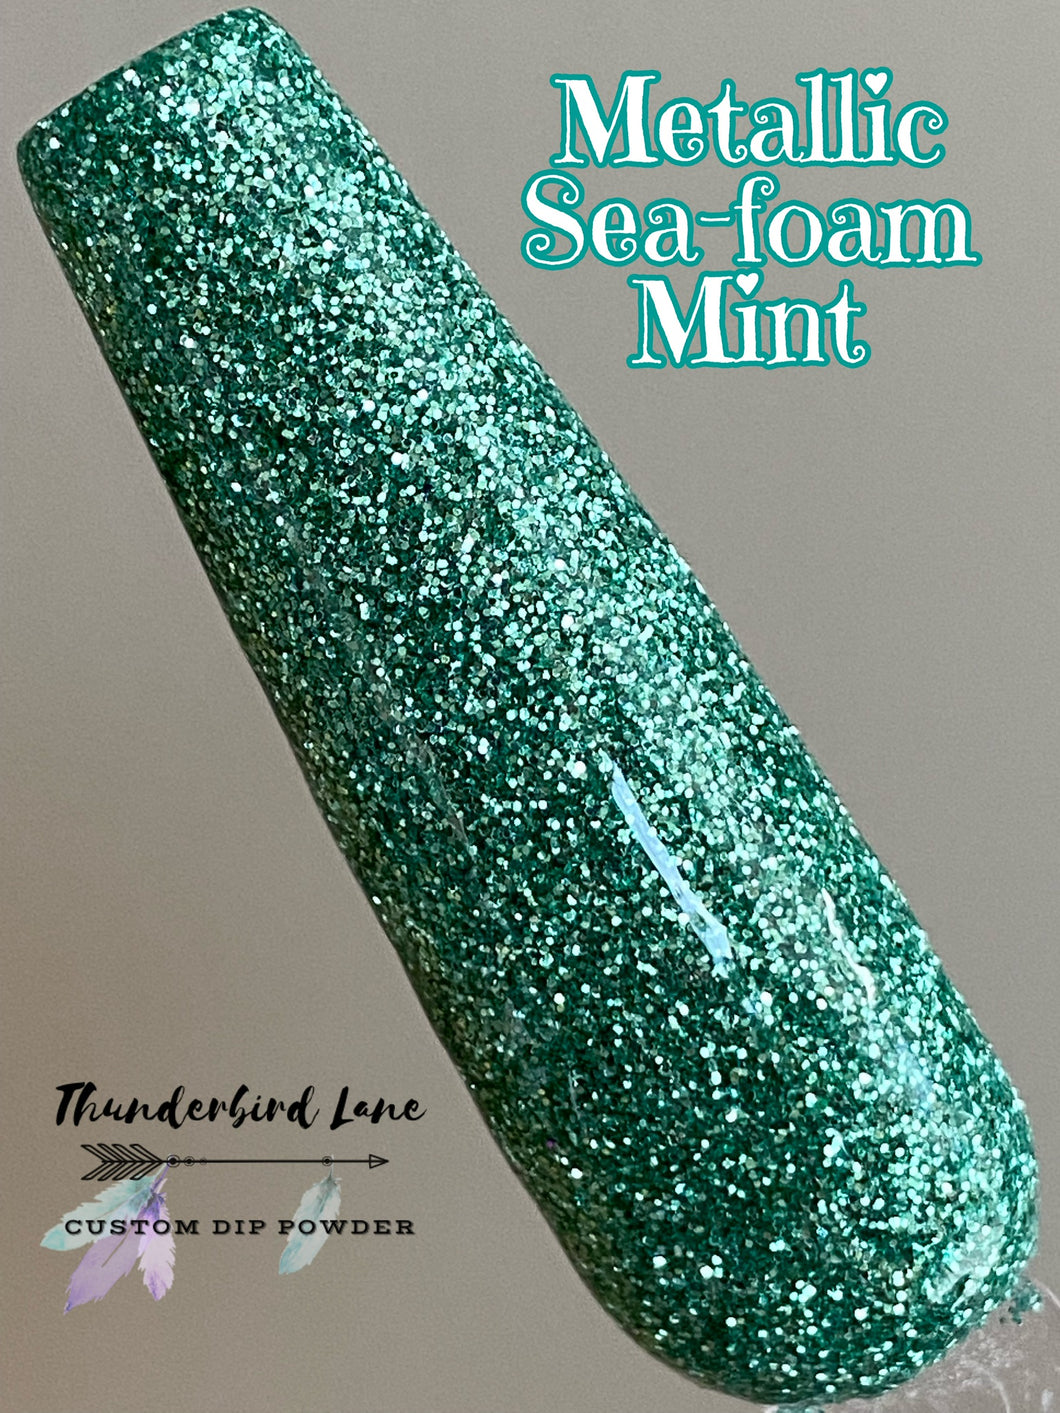 Metallic Sea-foam Mint